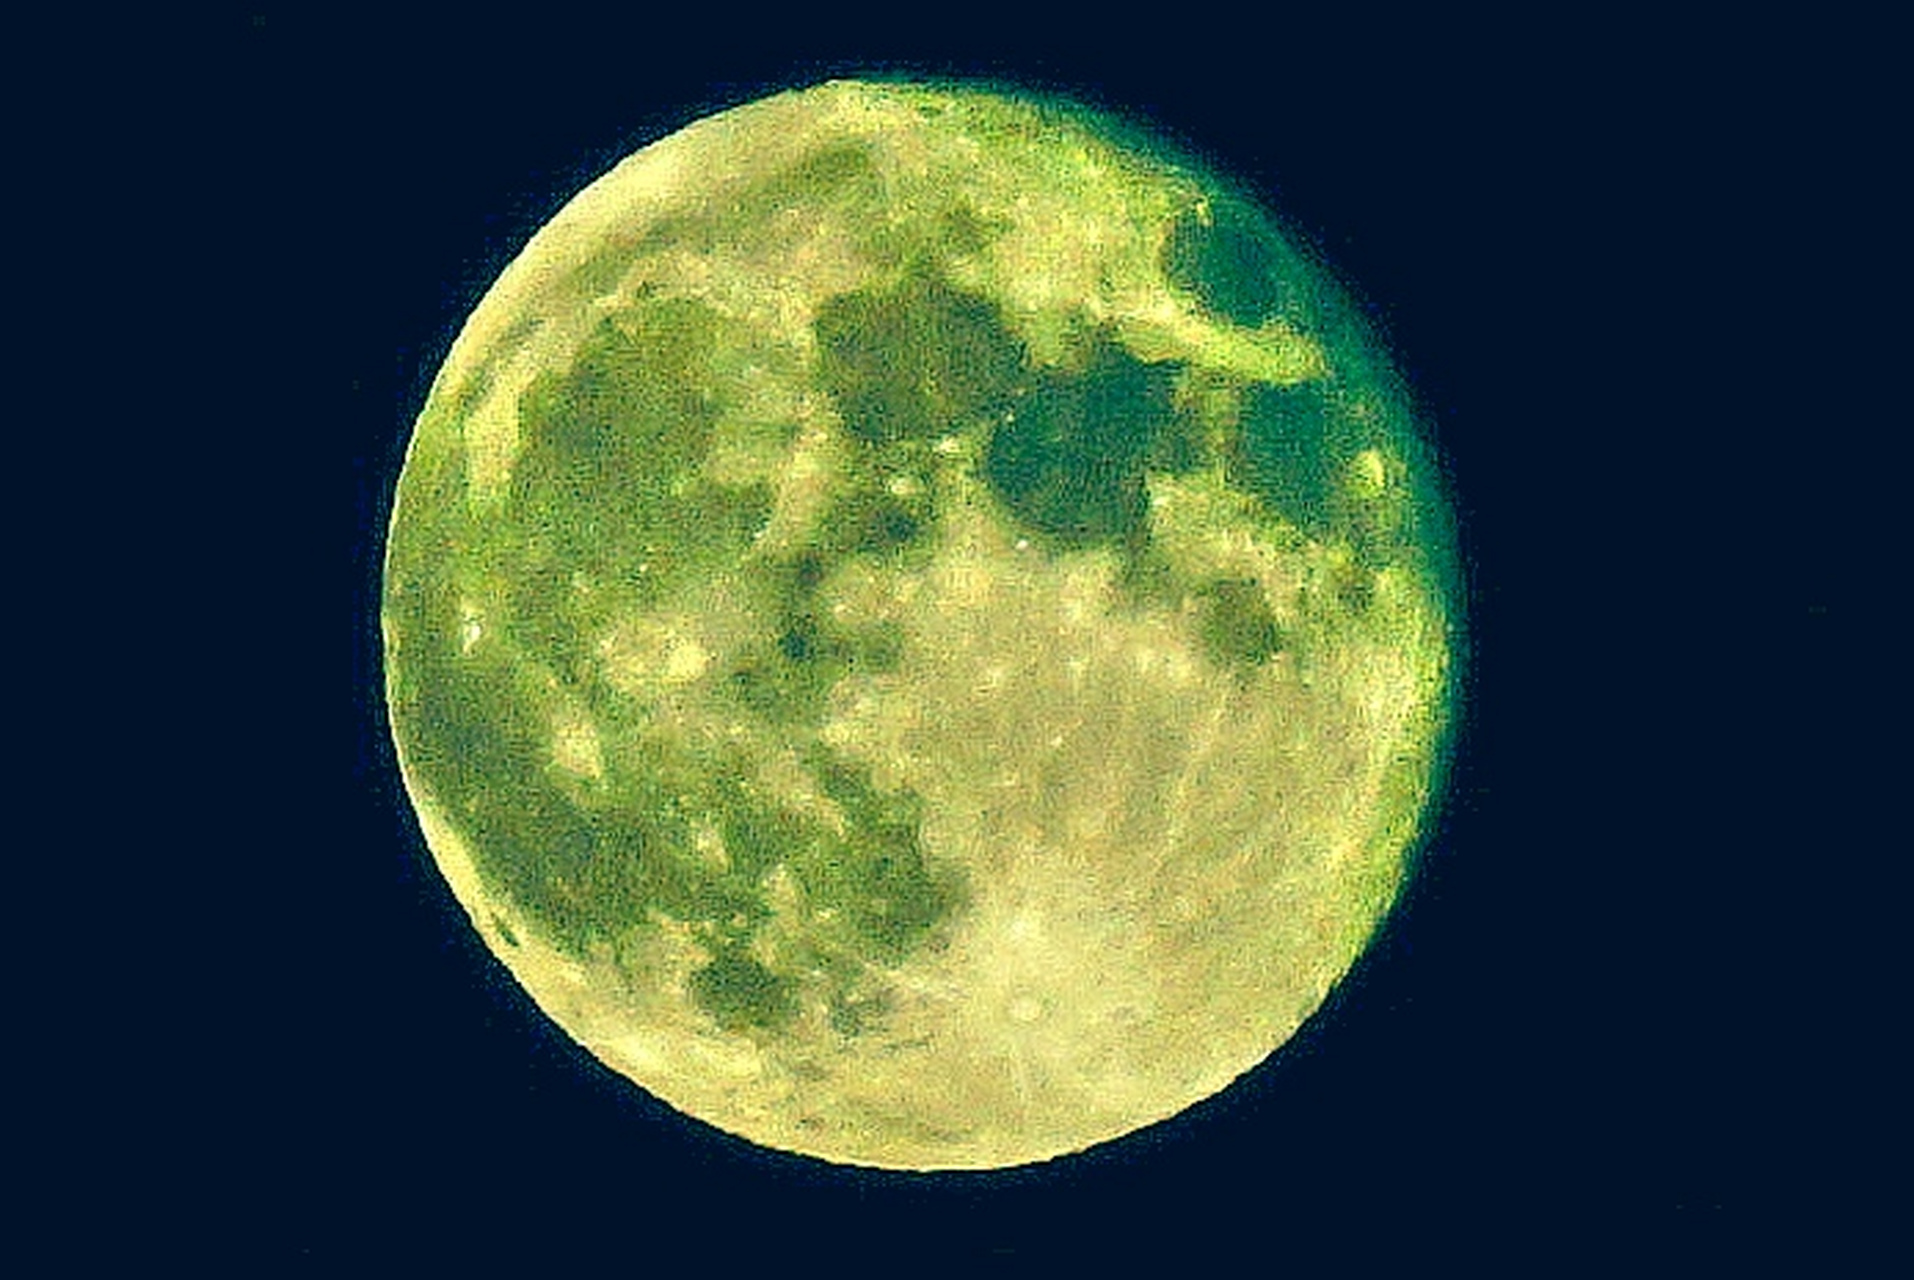 八月十六的月亮图片图片